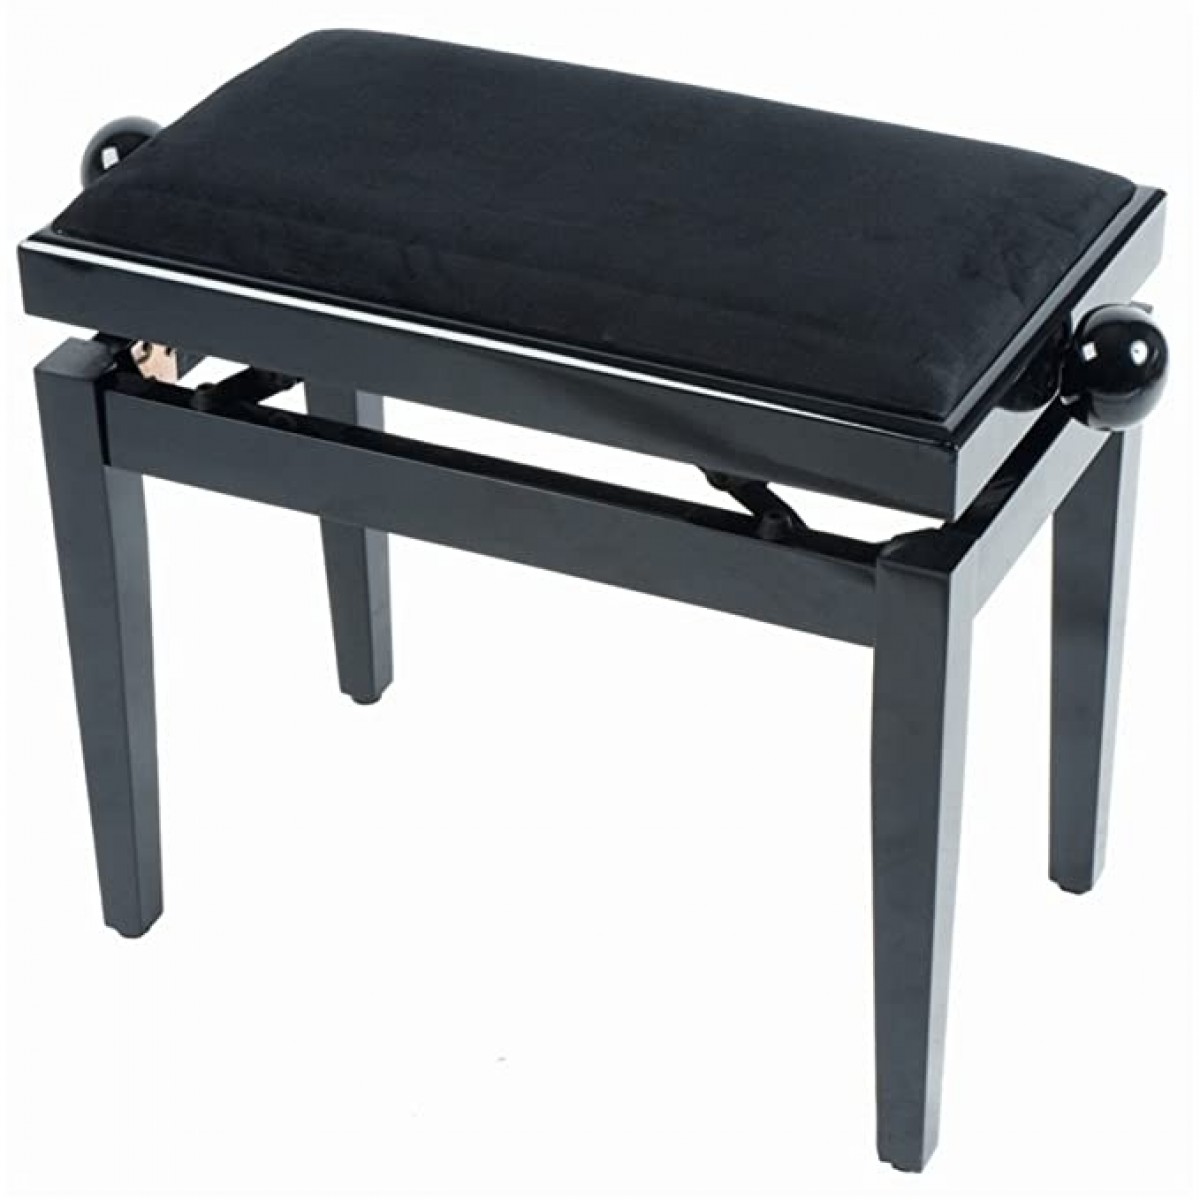 Quik Lok Pb010bk Height Adjustable Wood Piano Bench With Velvet Seat The School Locker